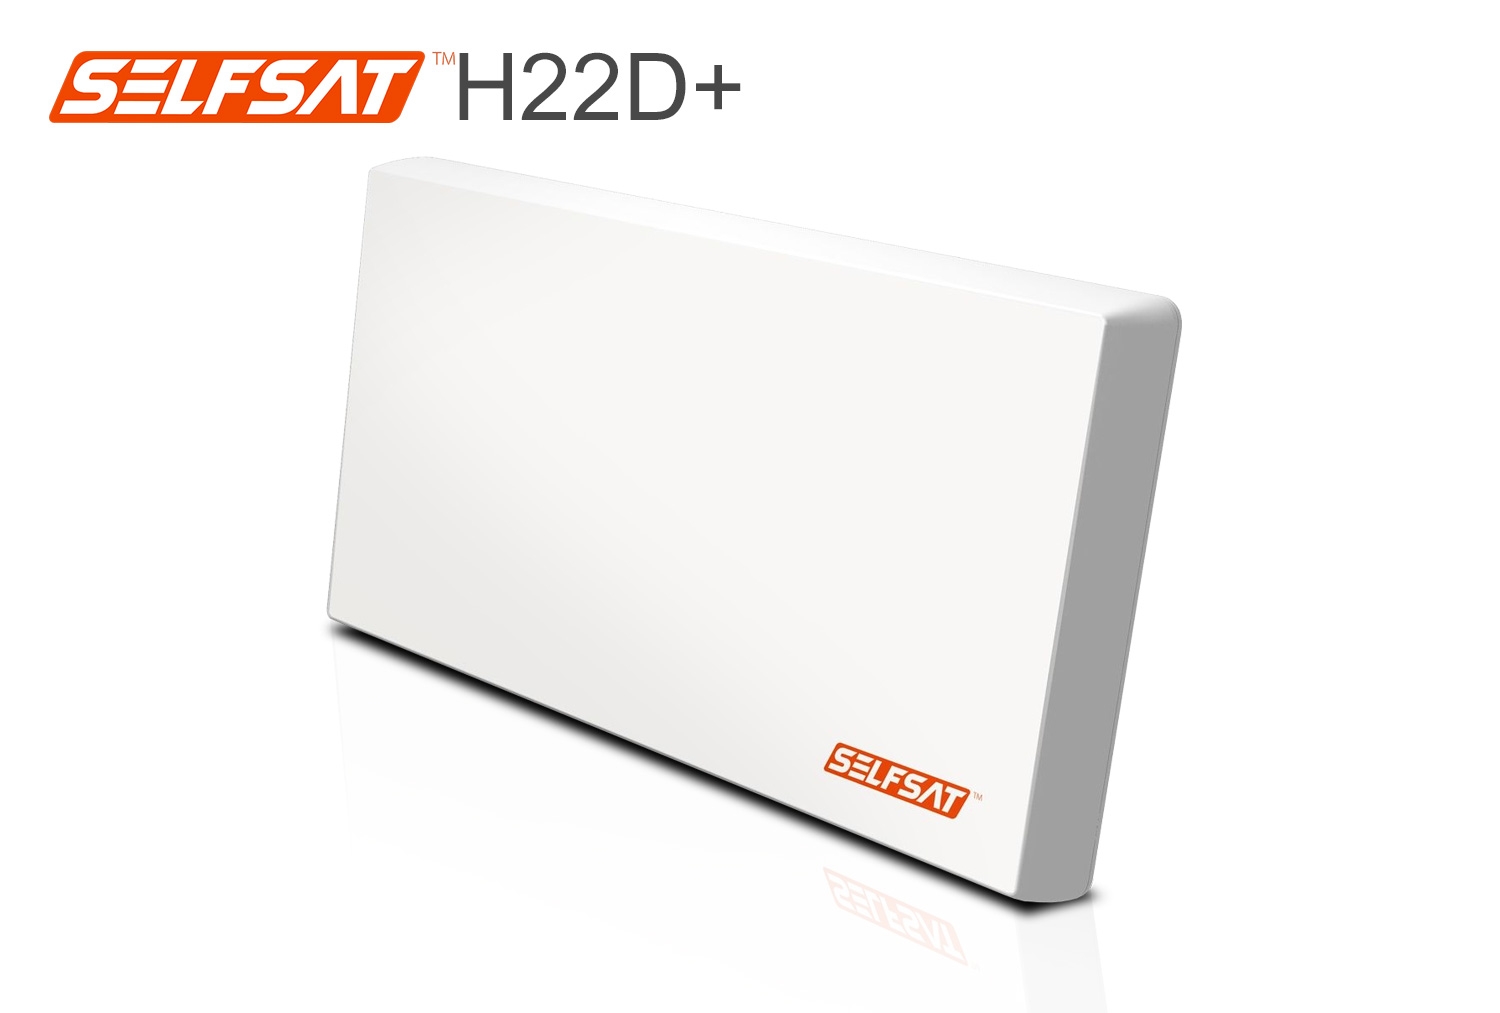 Selfsat H22D+ Flachantenne mit austauschbaren Single LNB